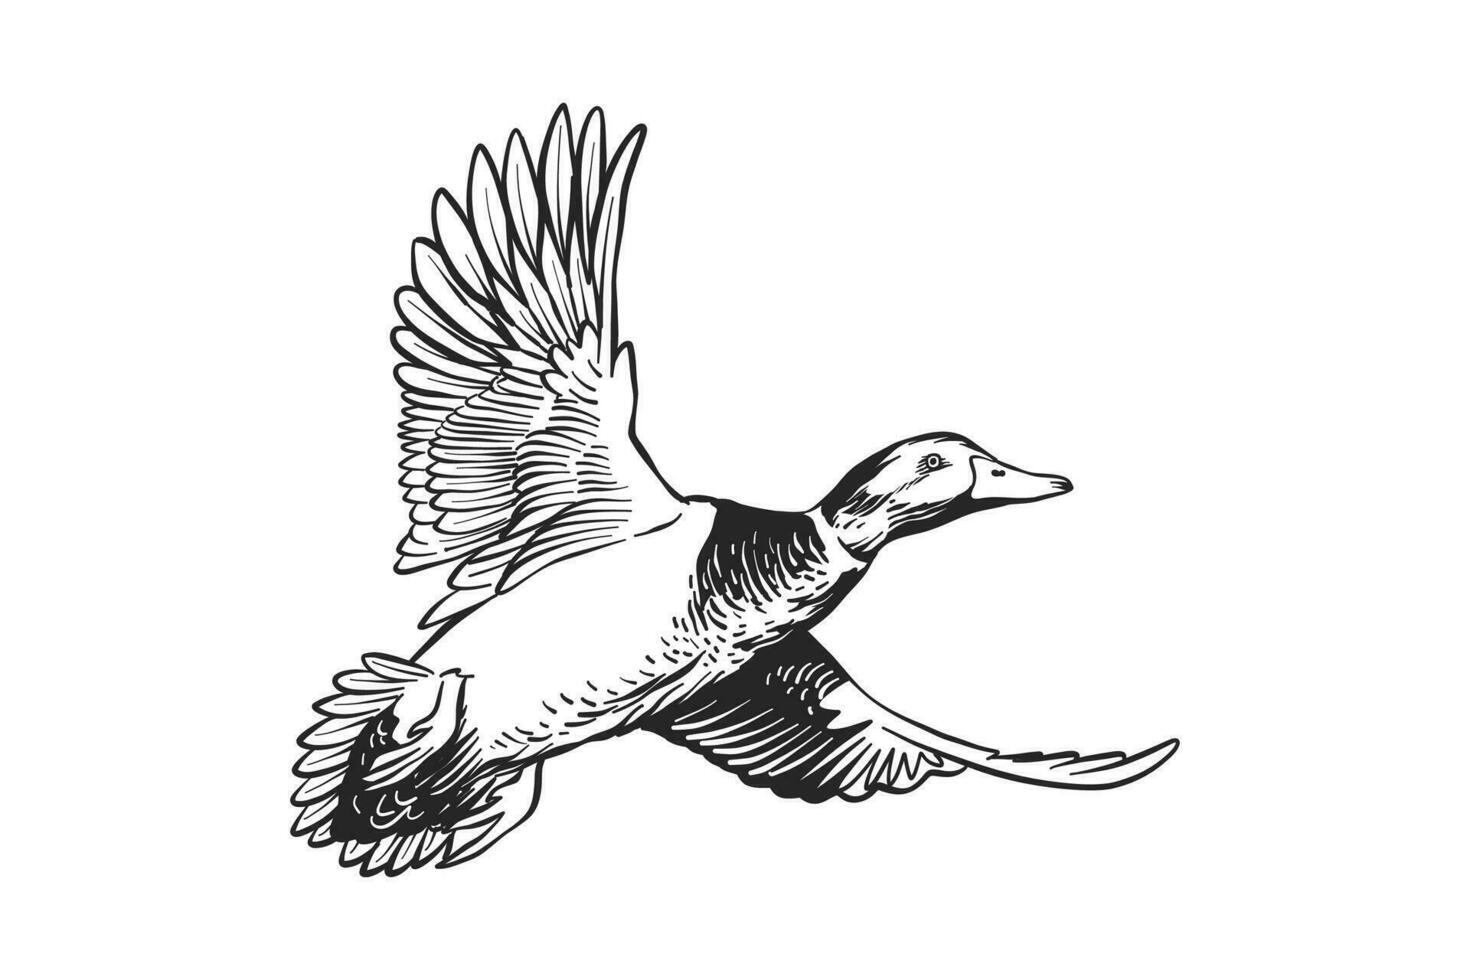 zwart en wit illustratie van een wilde eend eend in vlucht vector